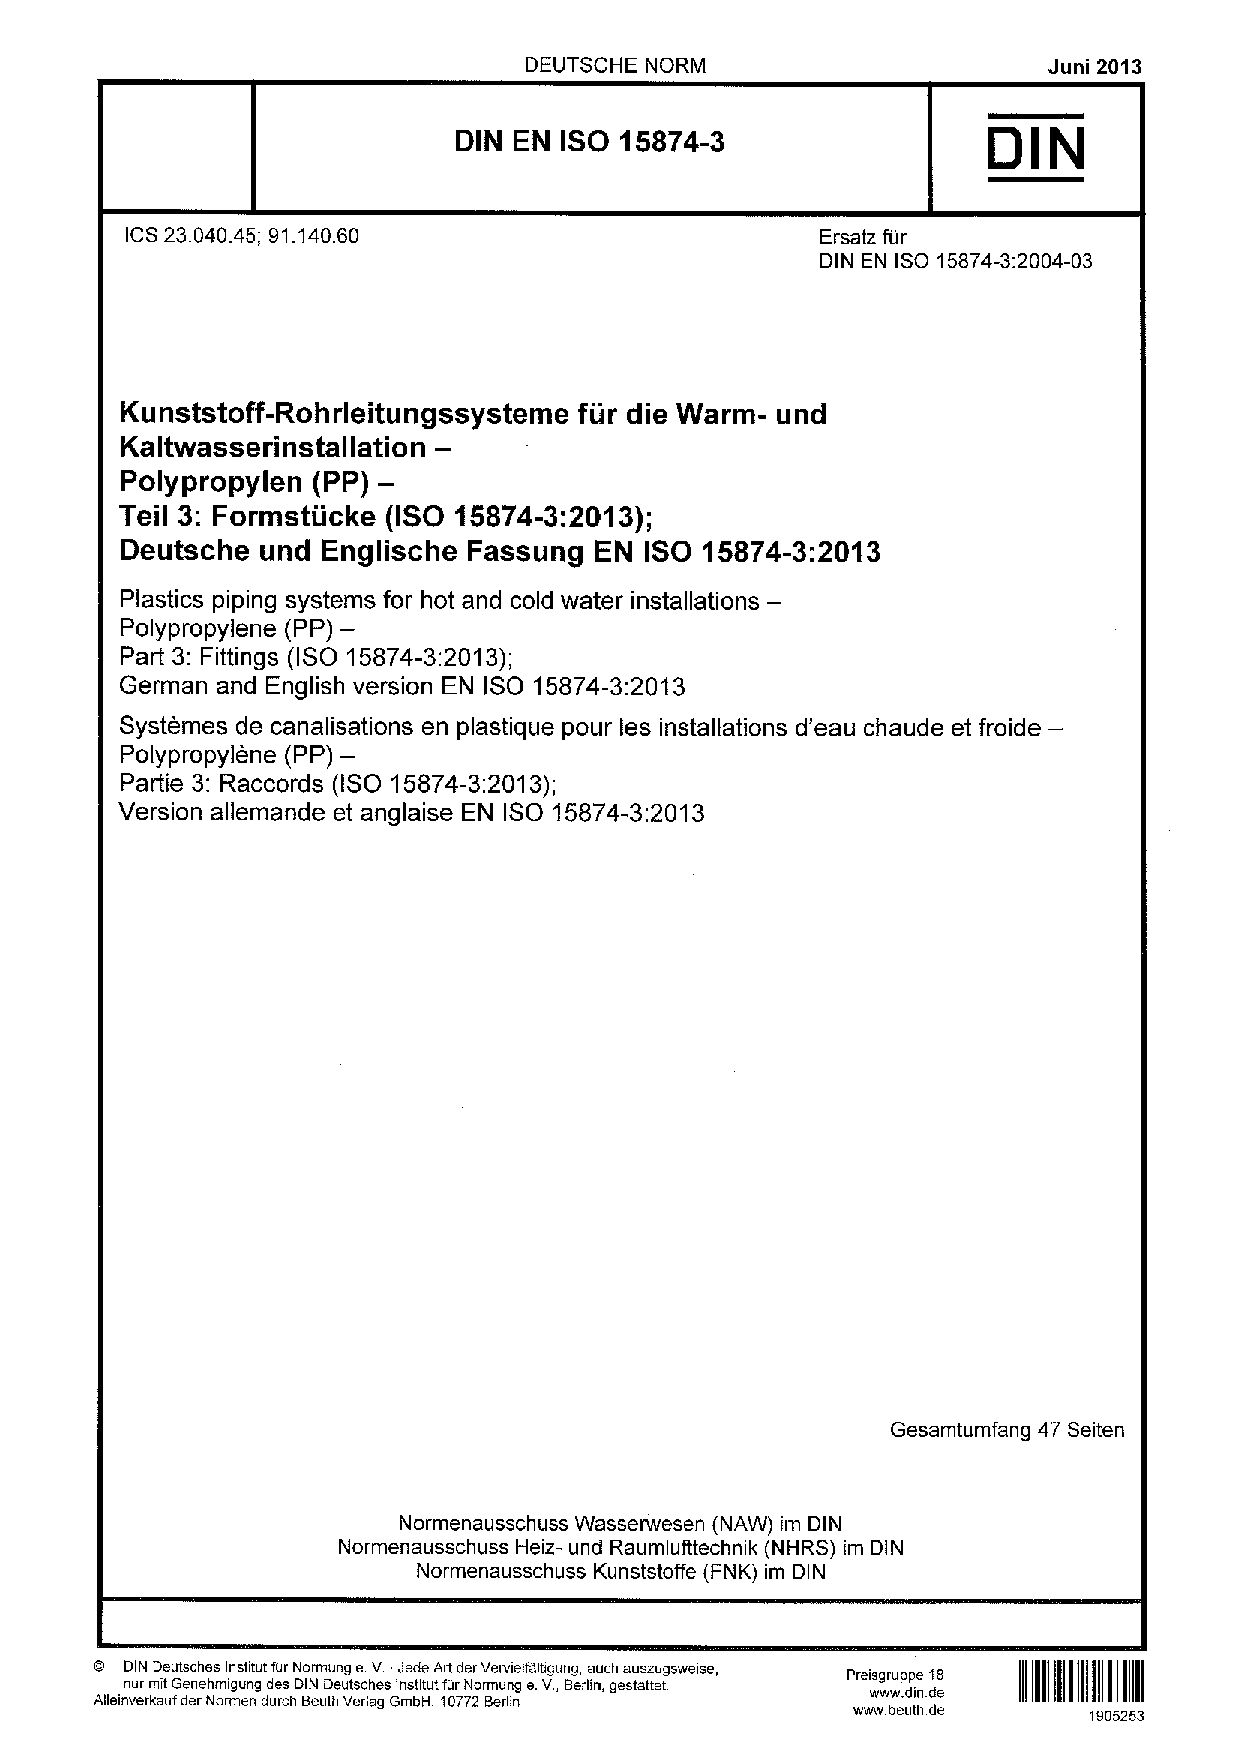 DIN EN ISO 15874-3:2013